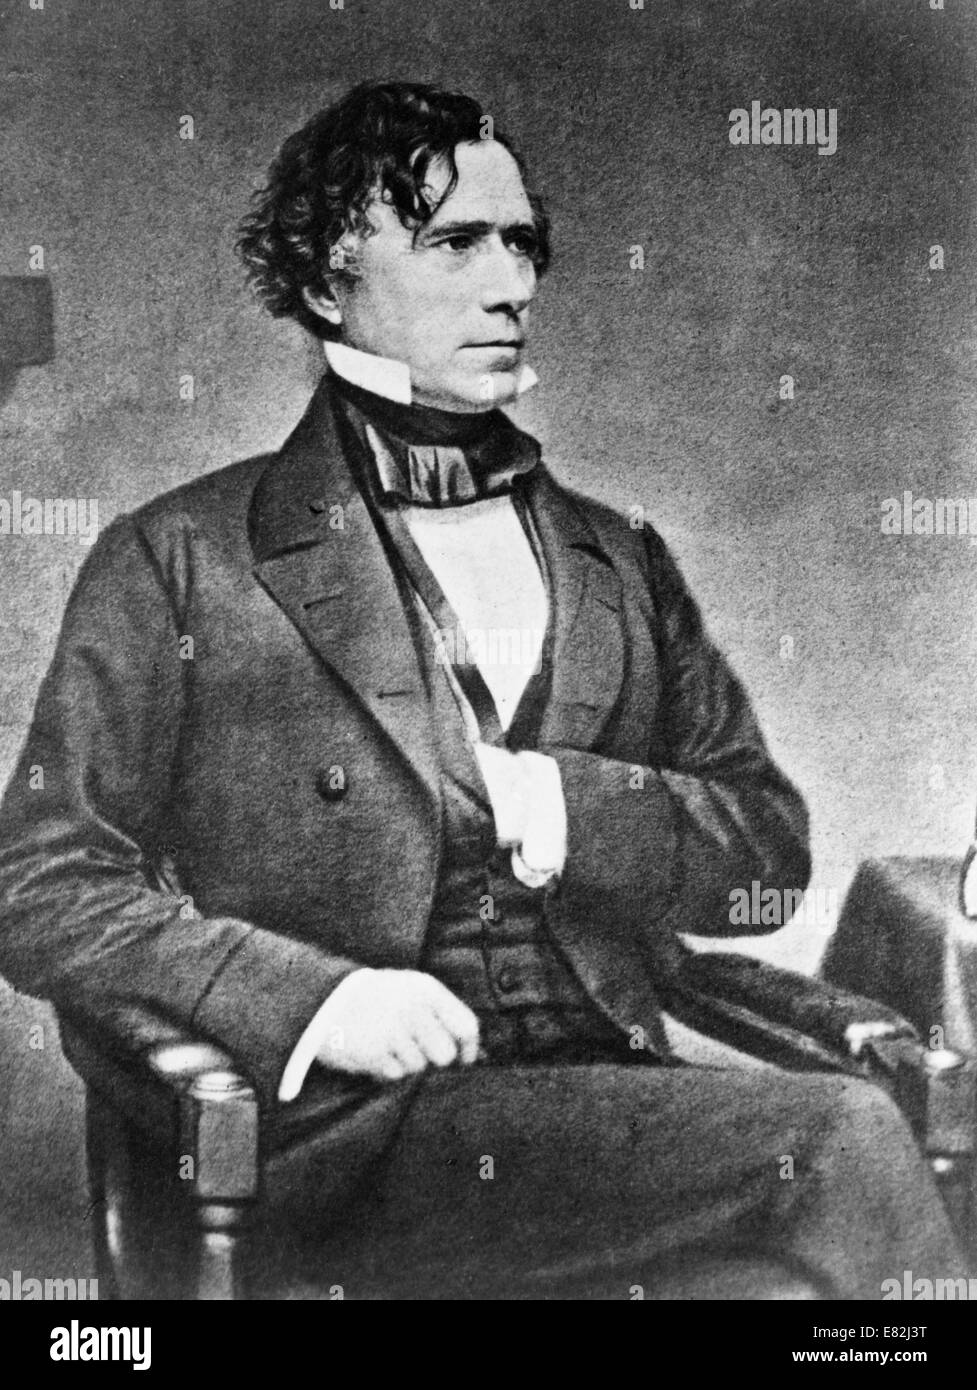 El presidente Franklin Pierce, retrato, sentado, mirando hacia la derecha, con la mano izquierda por dentro el chaleco. Entre 1855 y 1865. Foto de stock